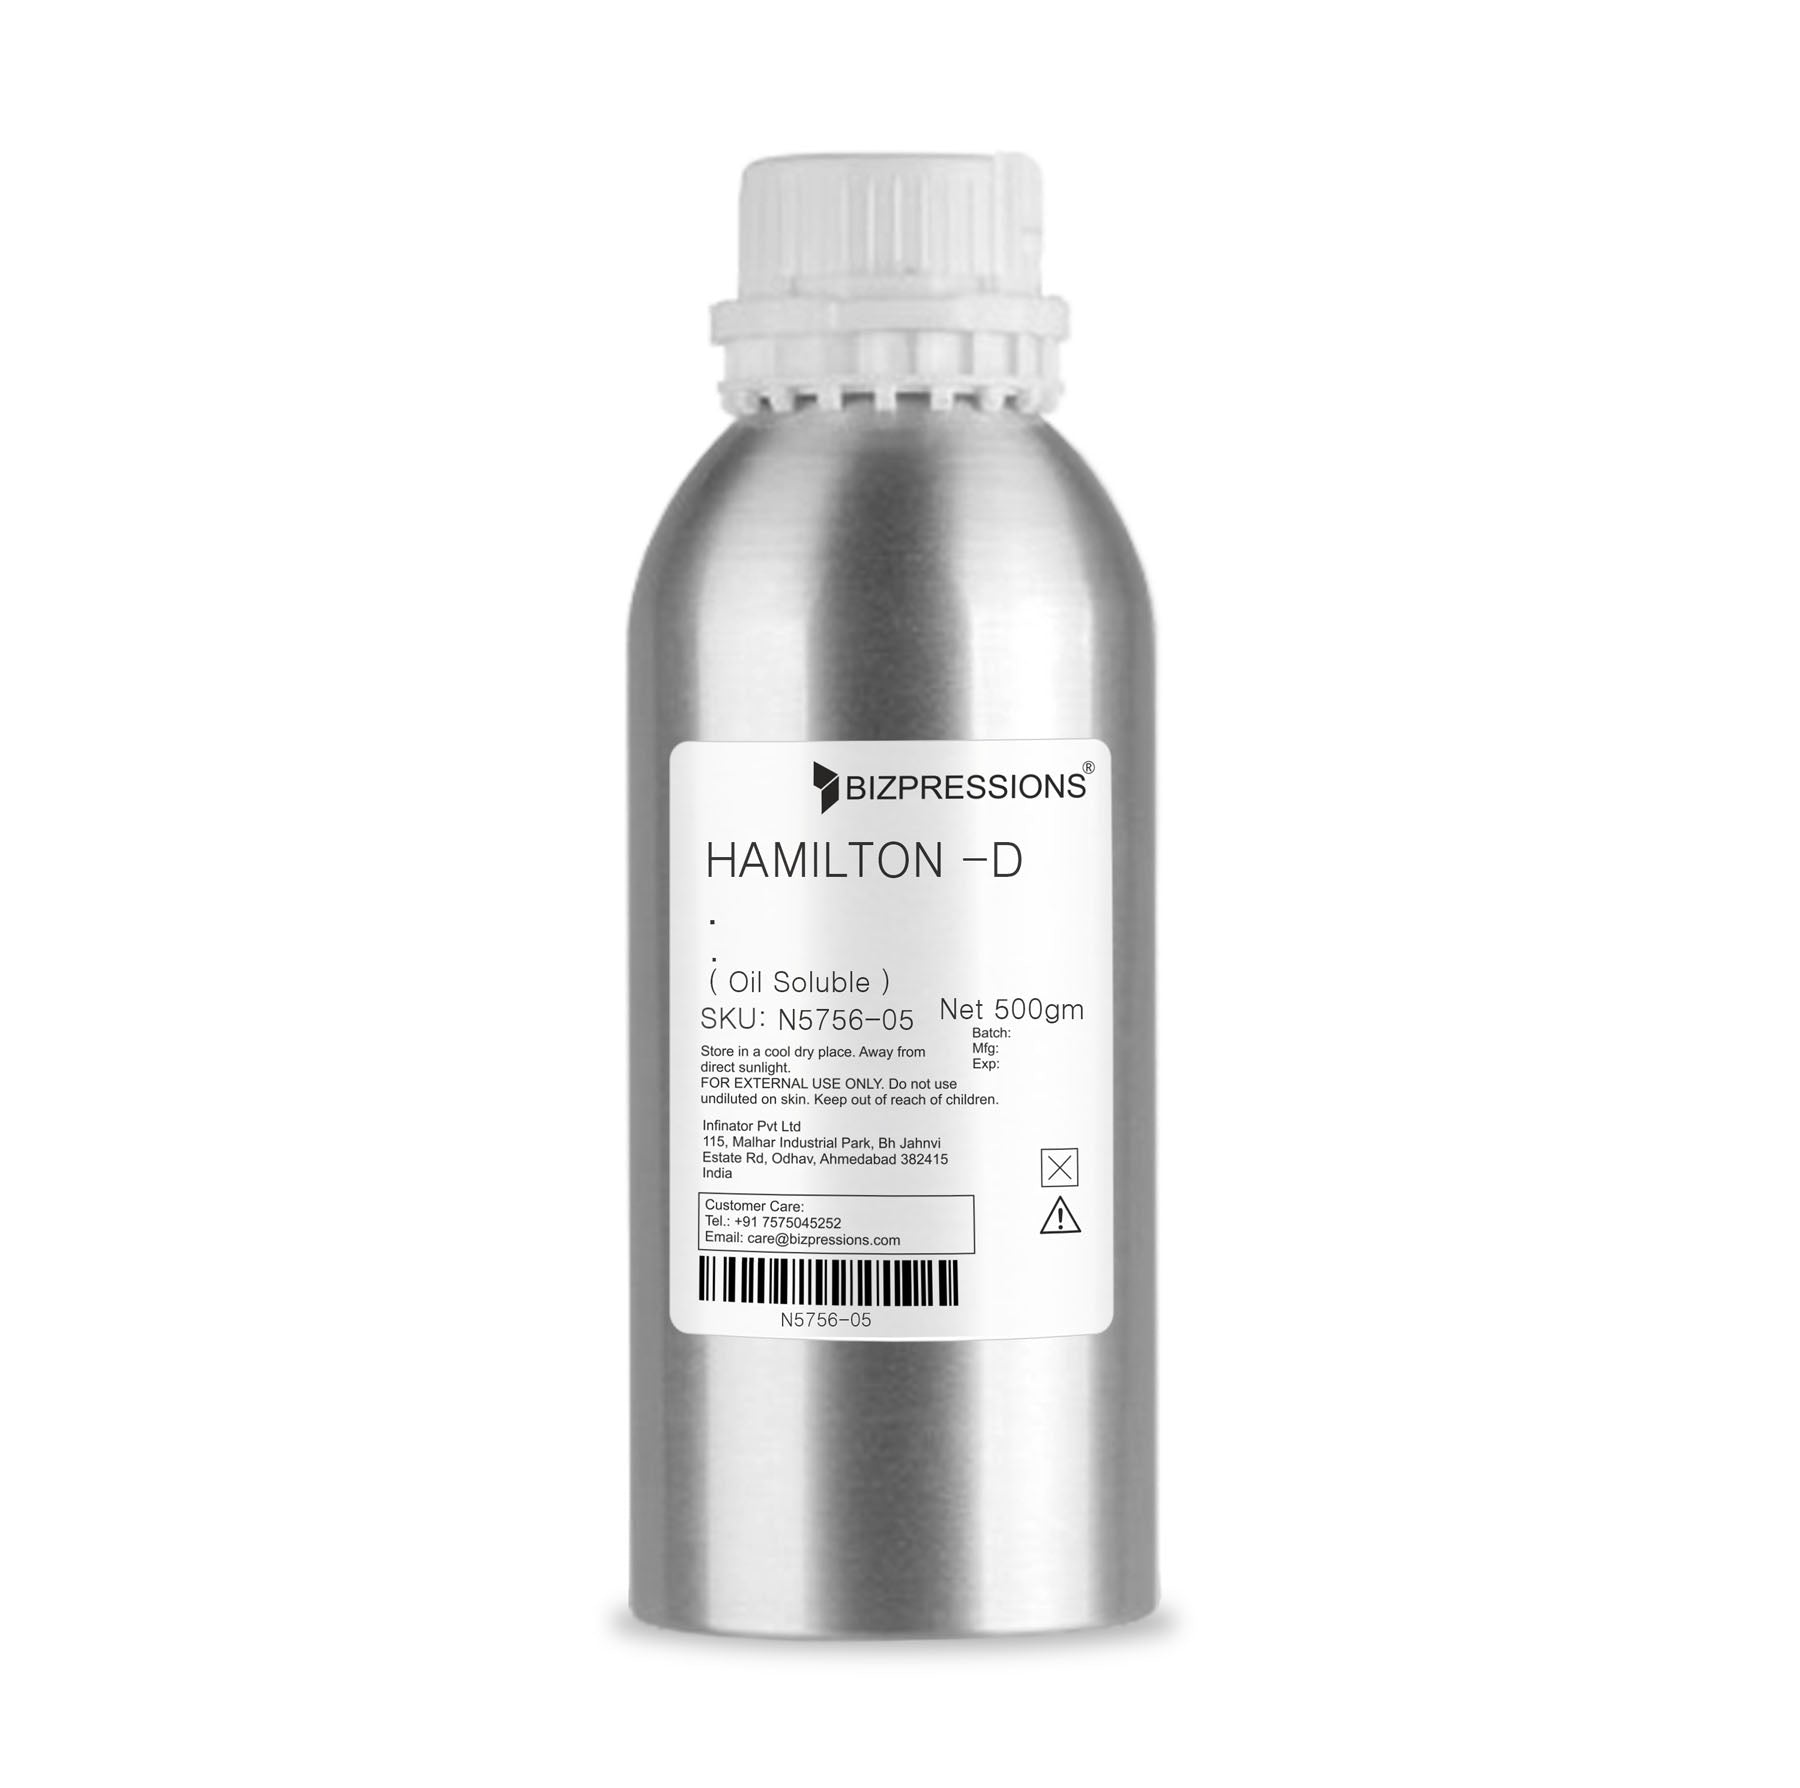 HAMILTON -D - Fragrance ( Oil Soluble ) - 500 gm